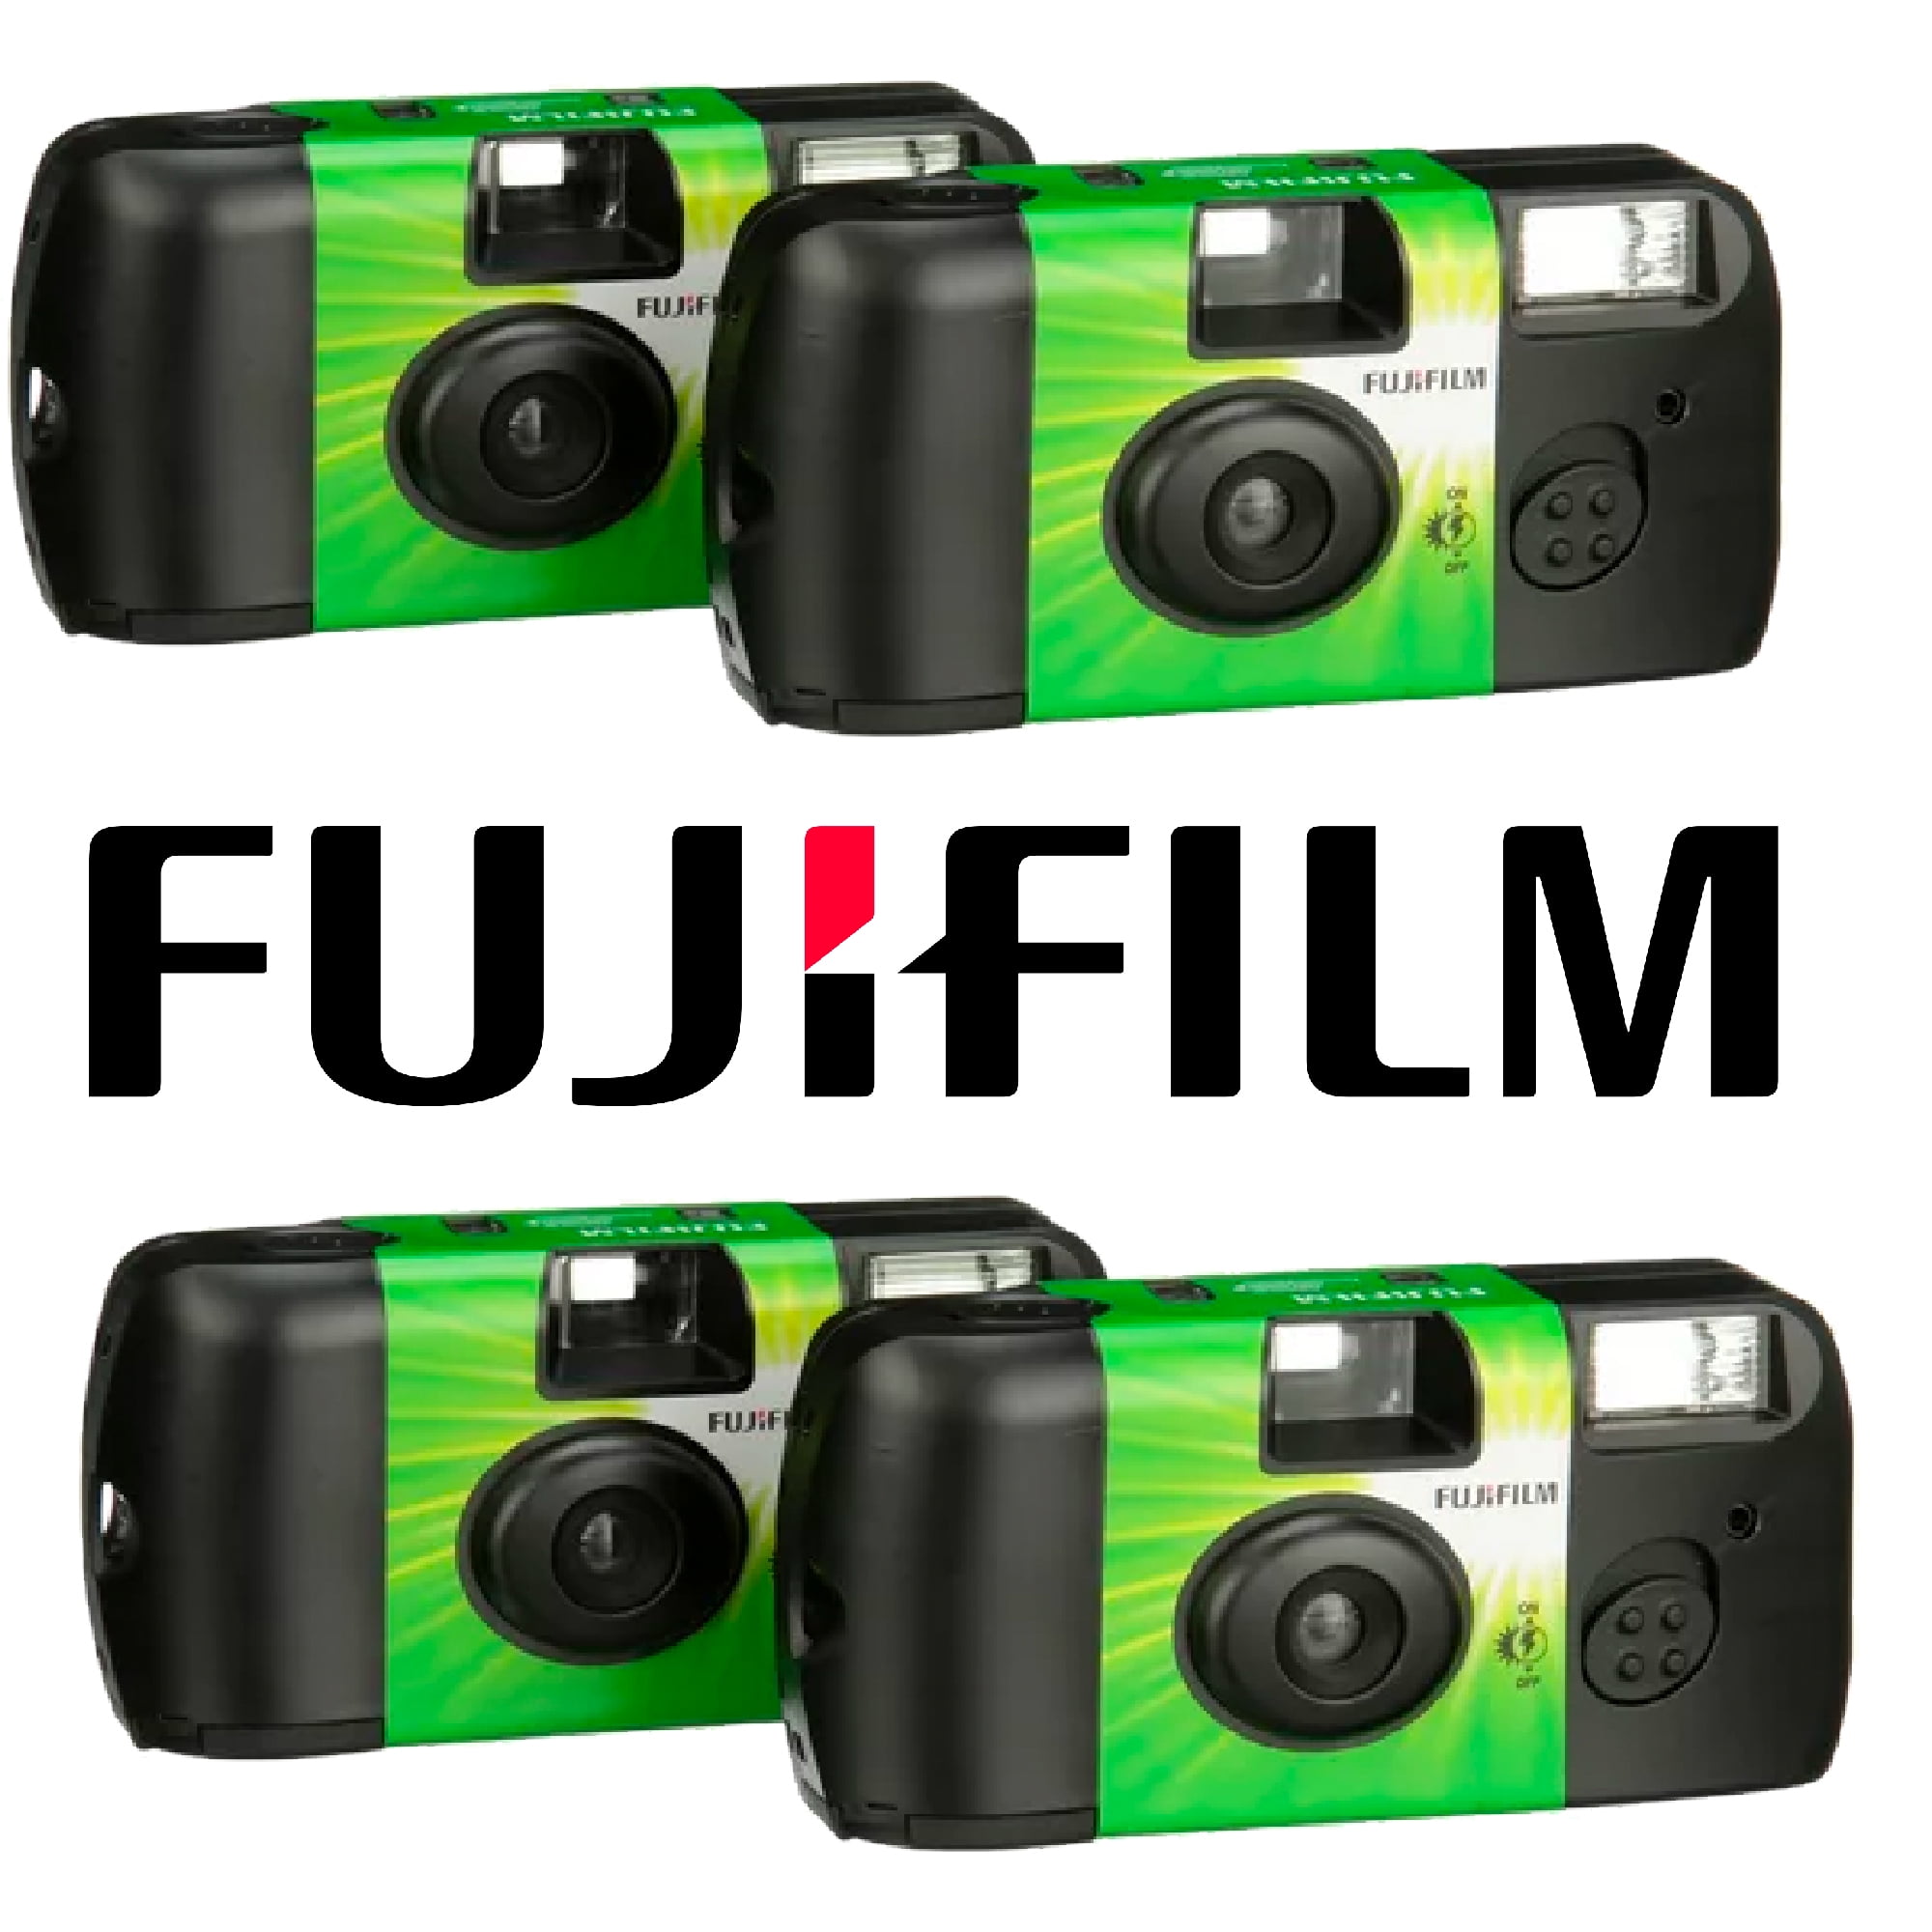 Fujifilm - Fotocamera Usa e Getta QuickSnap Flash integrato - 2 pz - ePrice